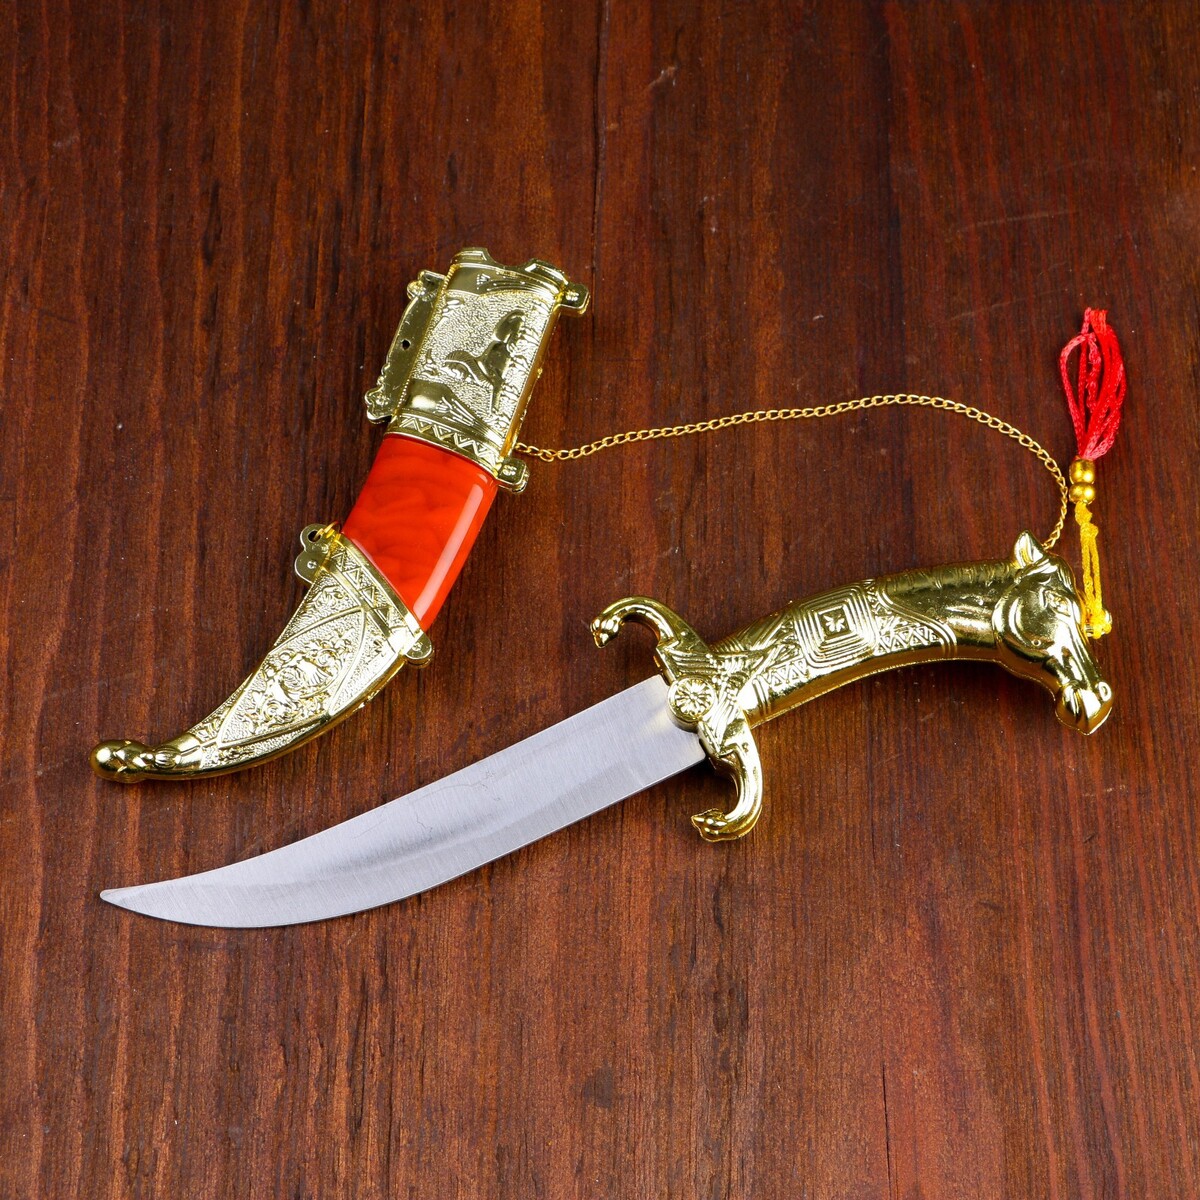 Сув. изделие нож, ножны серебро с красным, клинок 22 см клинок клана